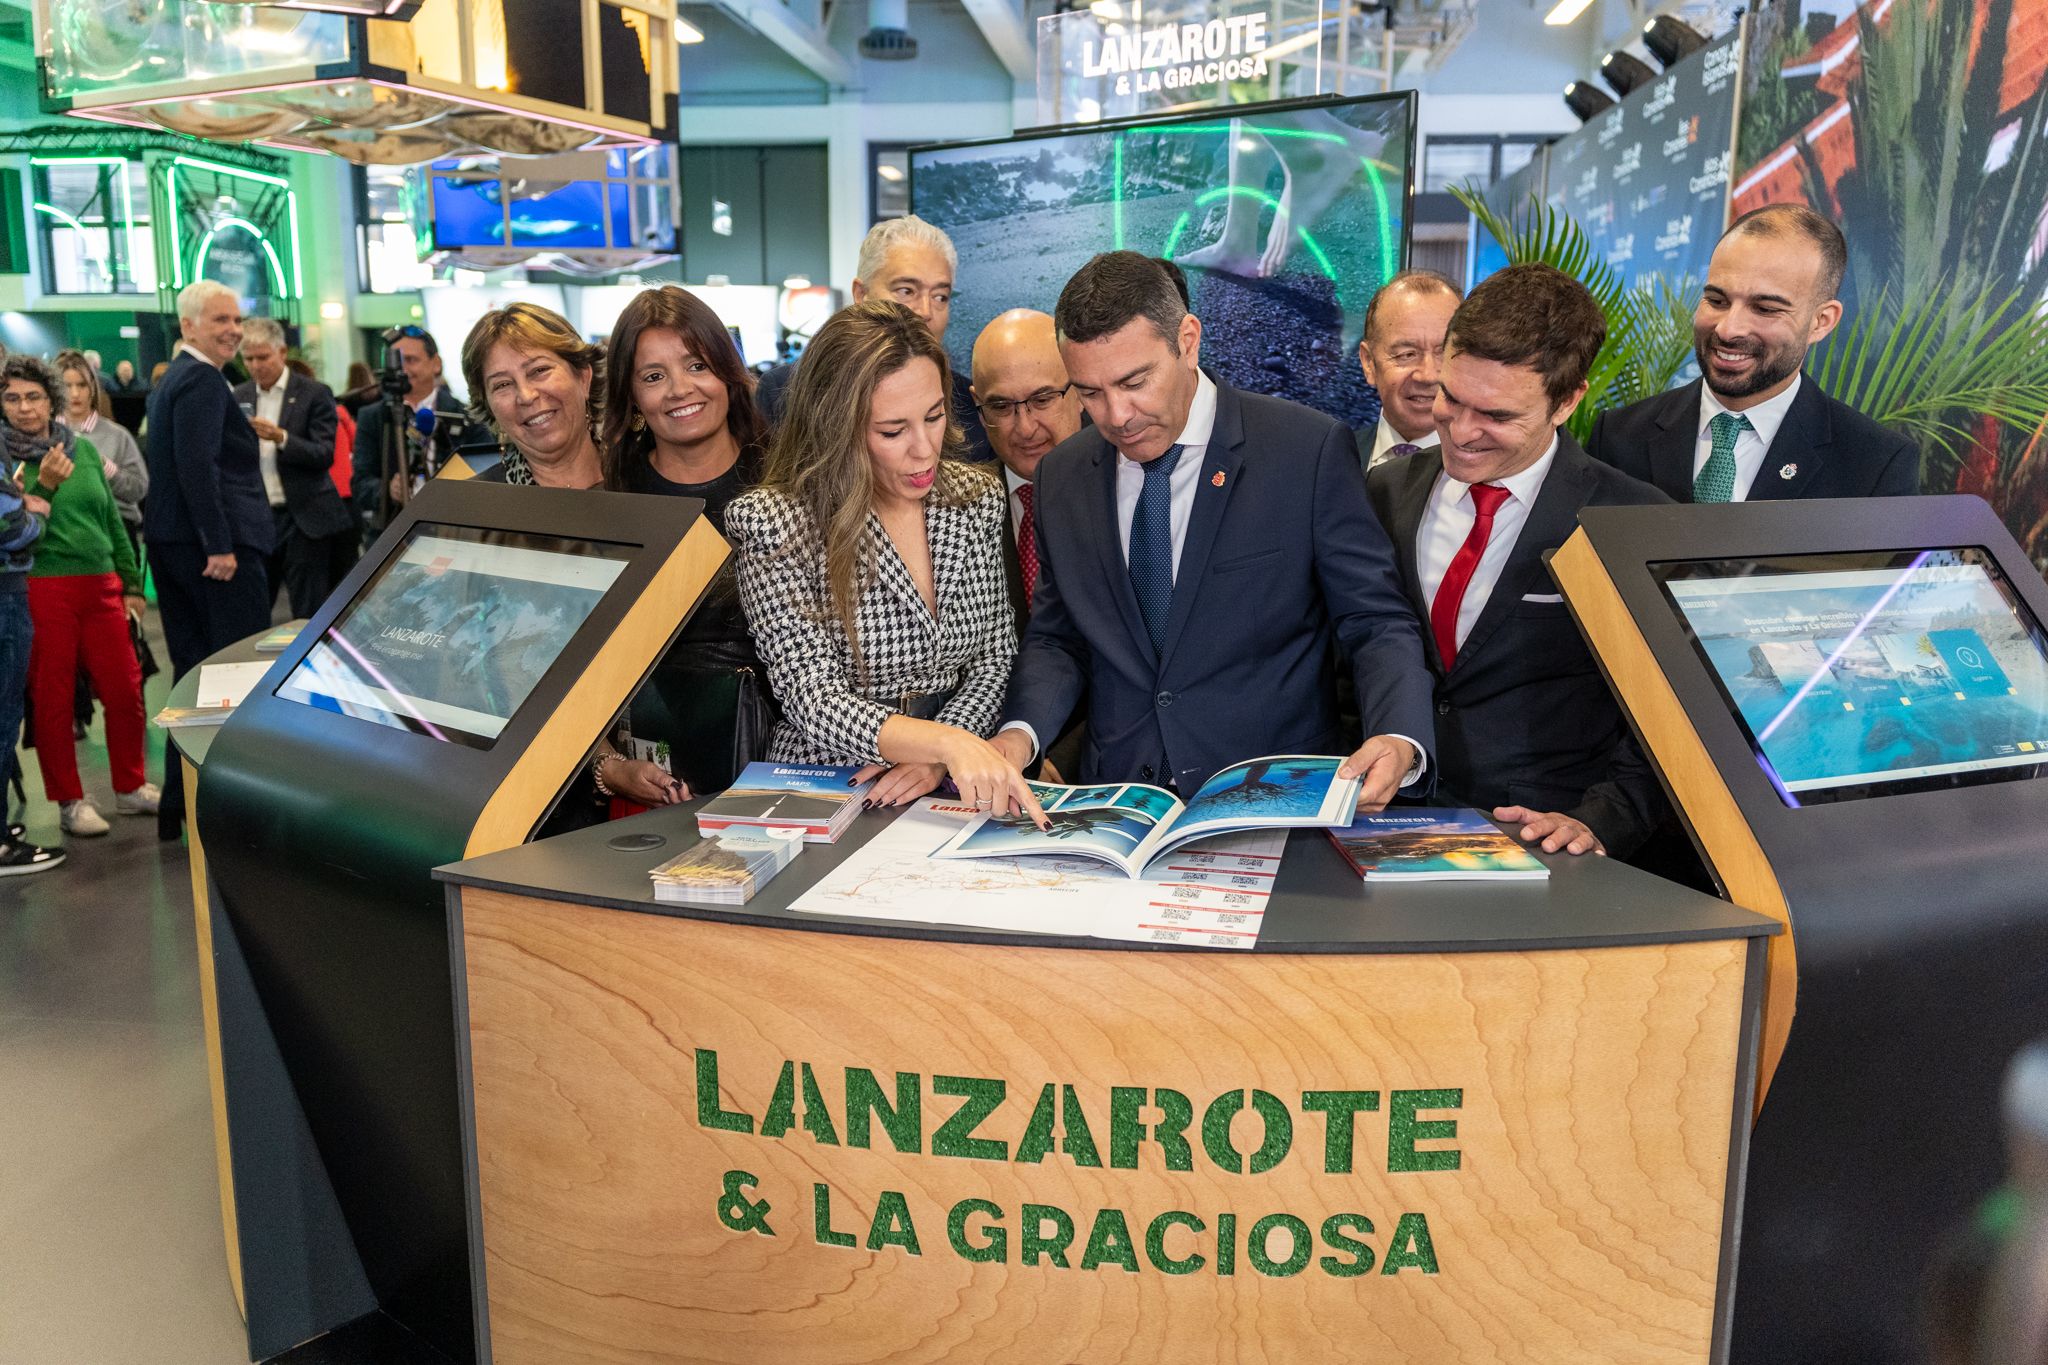 El Cabildo de Lanzarote continúa en su lucha por "posicionarse" turísticamente ante el mercado alemán